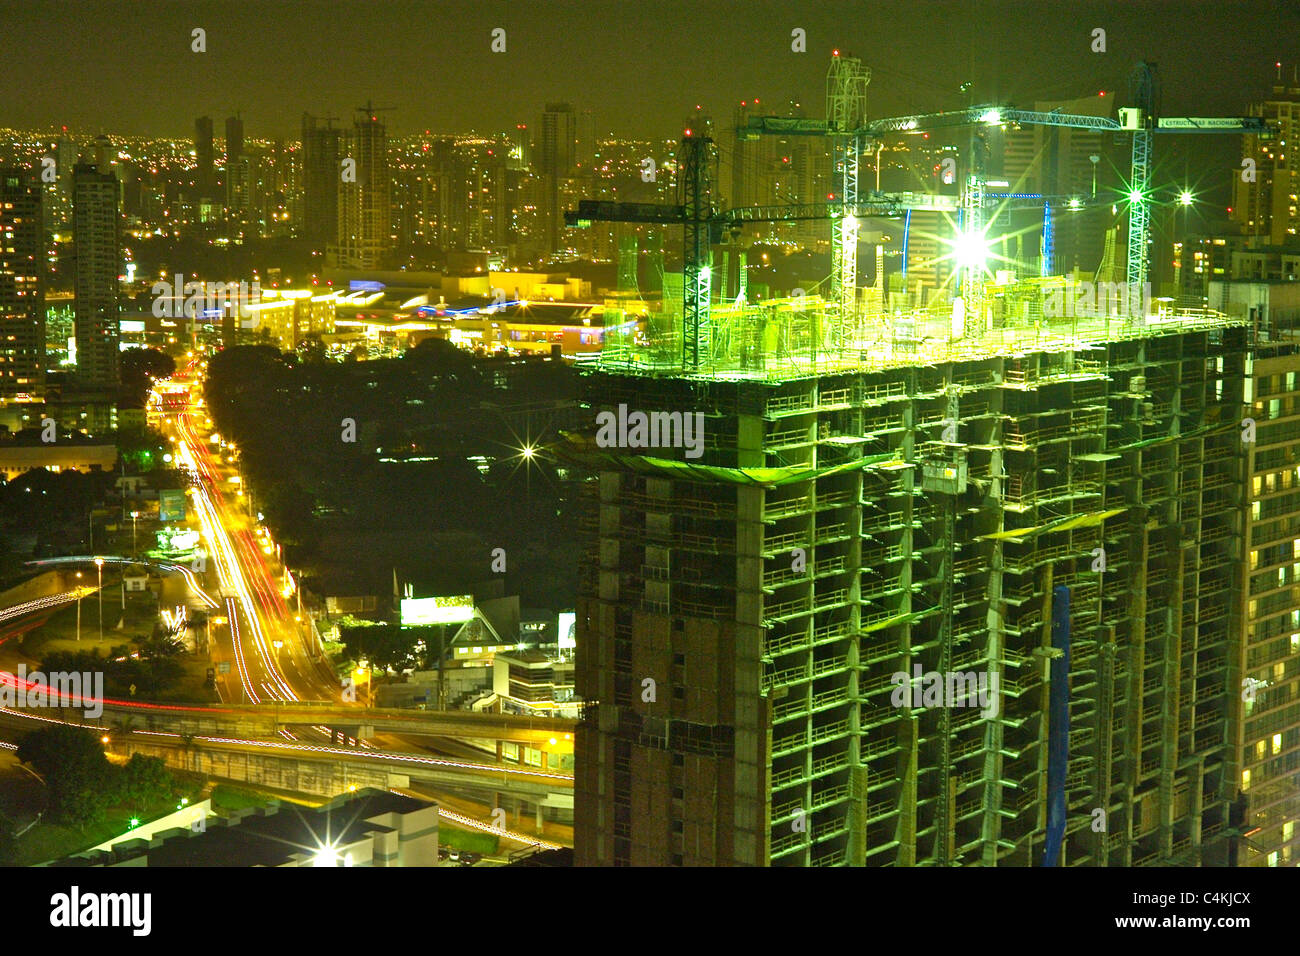 Ausländische Investoren Kraftstoff Panama Bauboom: Panama City ist eine hotbead für Bautätigkeit. Im Bild: paitilla Nachbarschaft Stockfoto